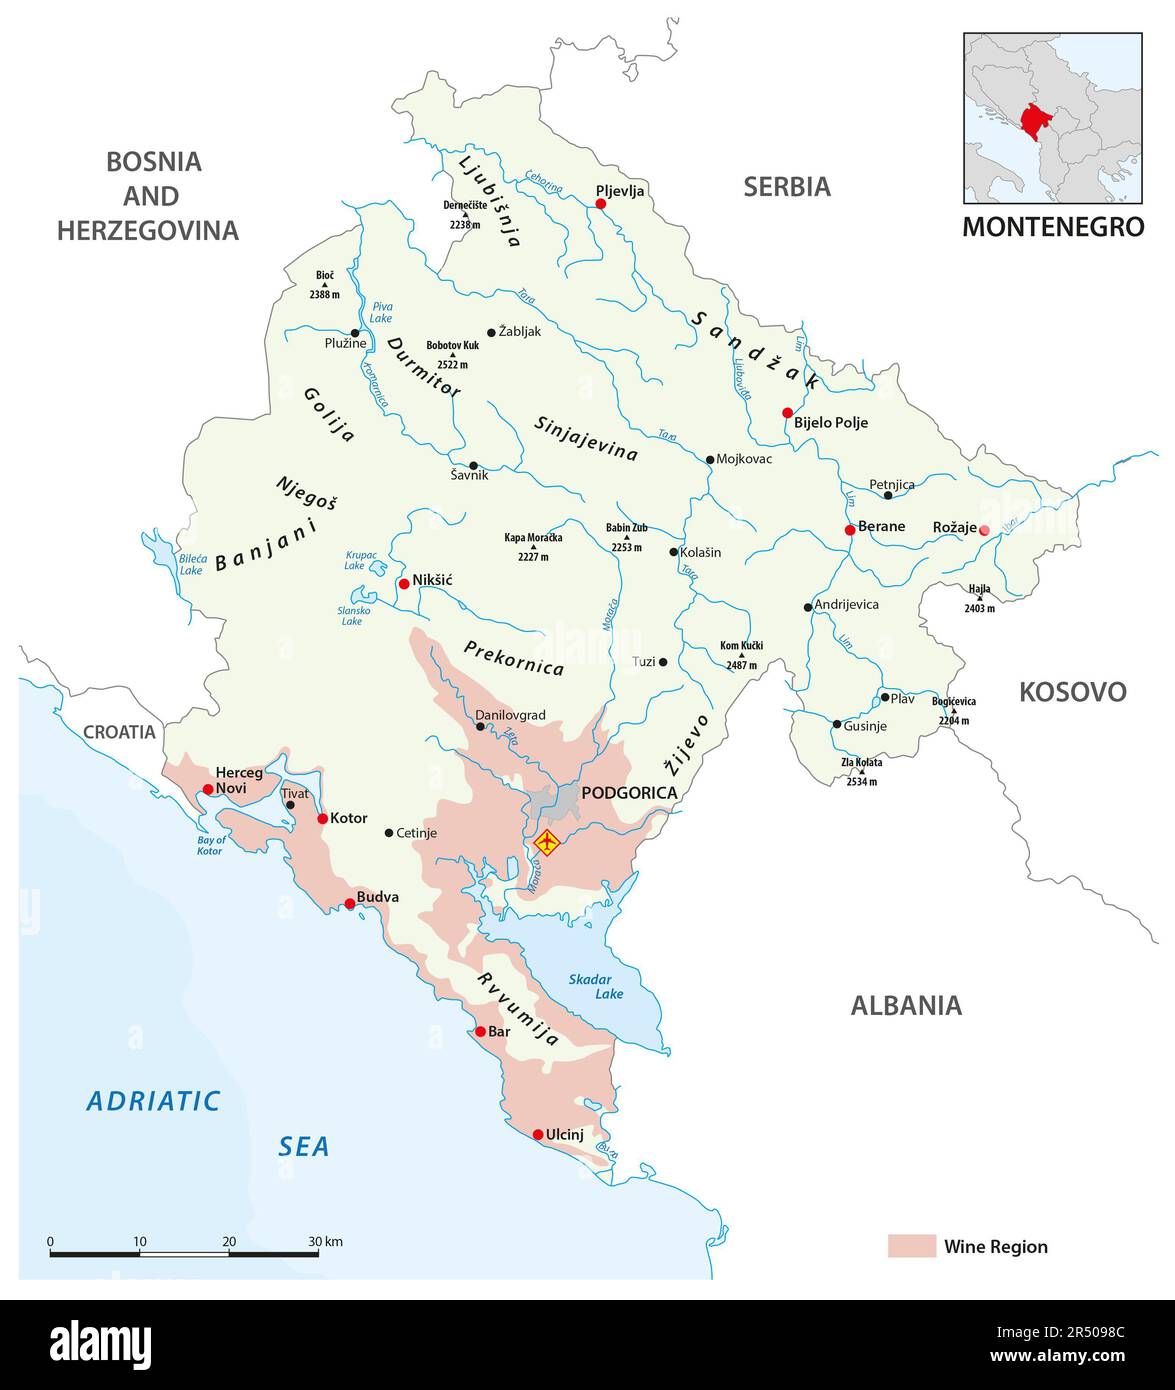 vector map of montenegrin wine regions, Montenegro Stock Photo